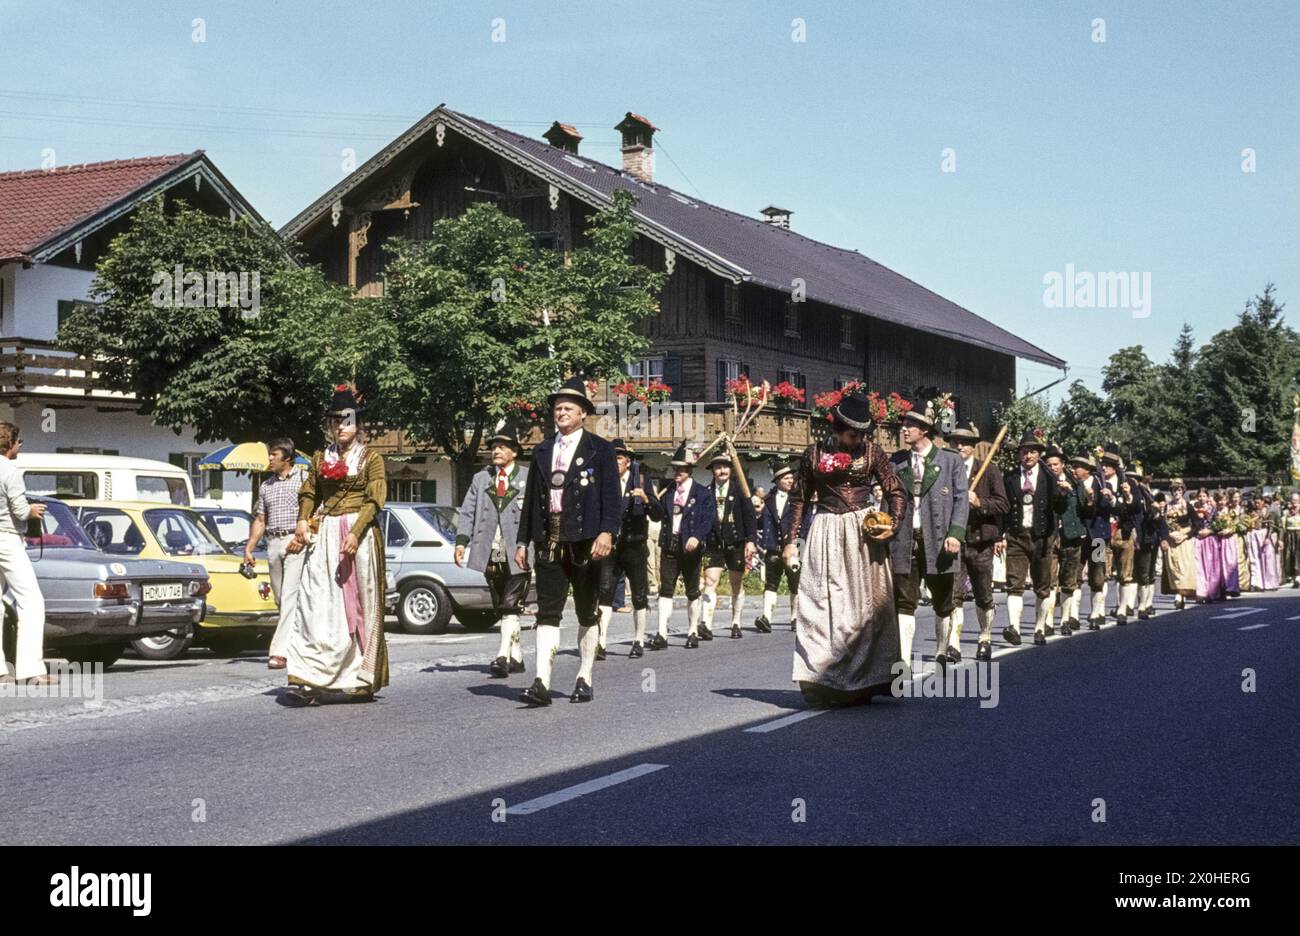 Trachtenumzug bei Maria Himmelfahrt auf den Straßen von Kochel am See. Undatierte Aufnahme, ca. 1975. [Automatisierte Übersetzung] Stockfoto